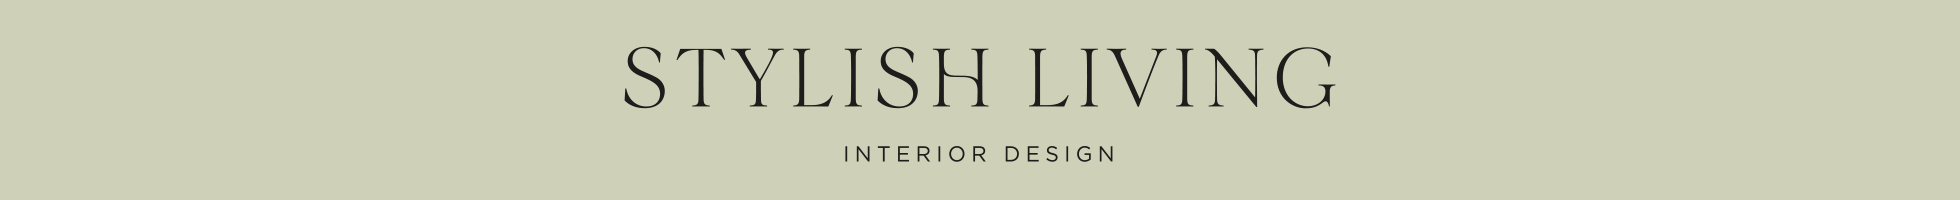 Stylish Living logo